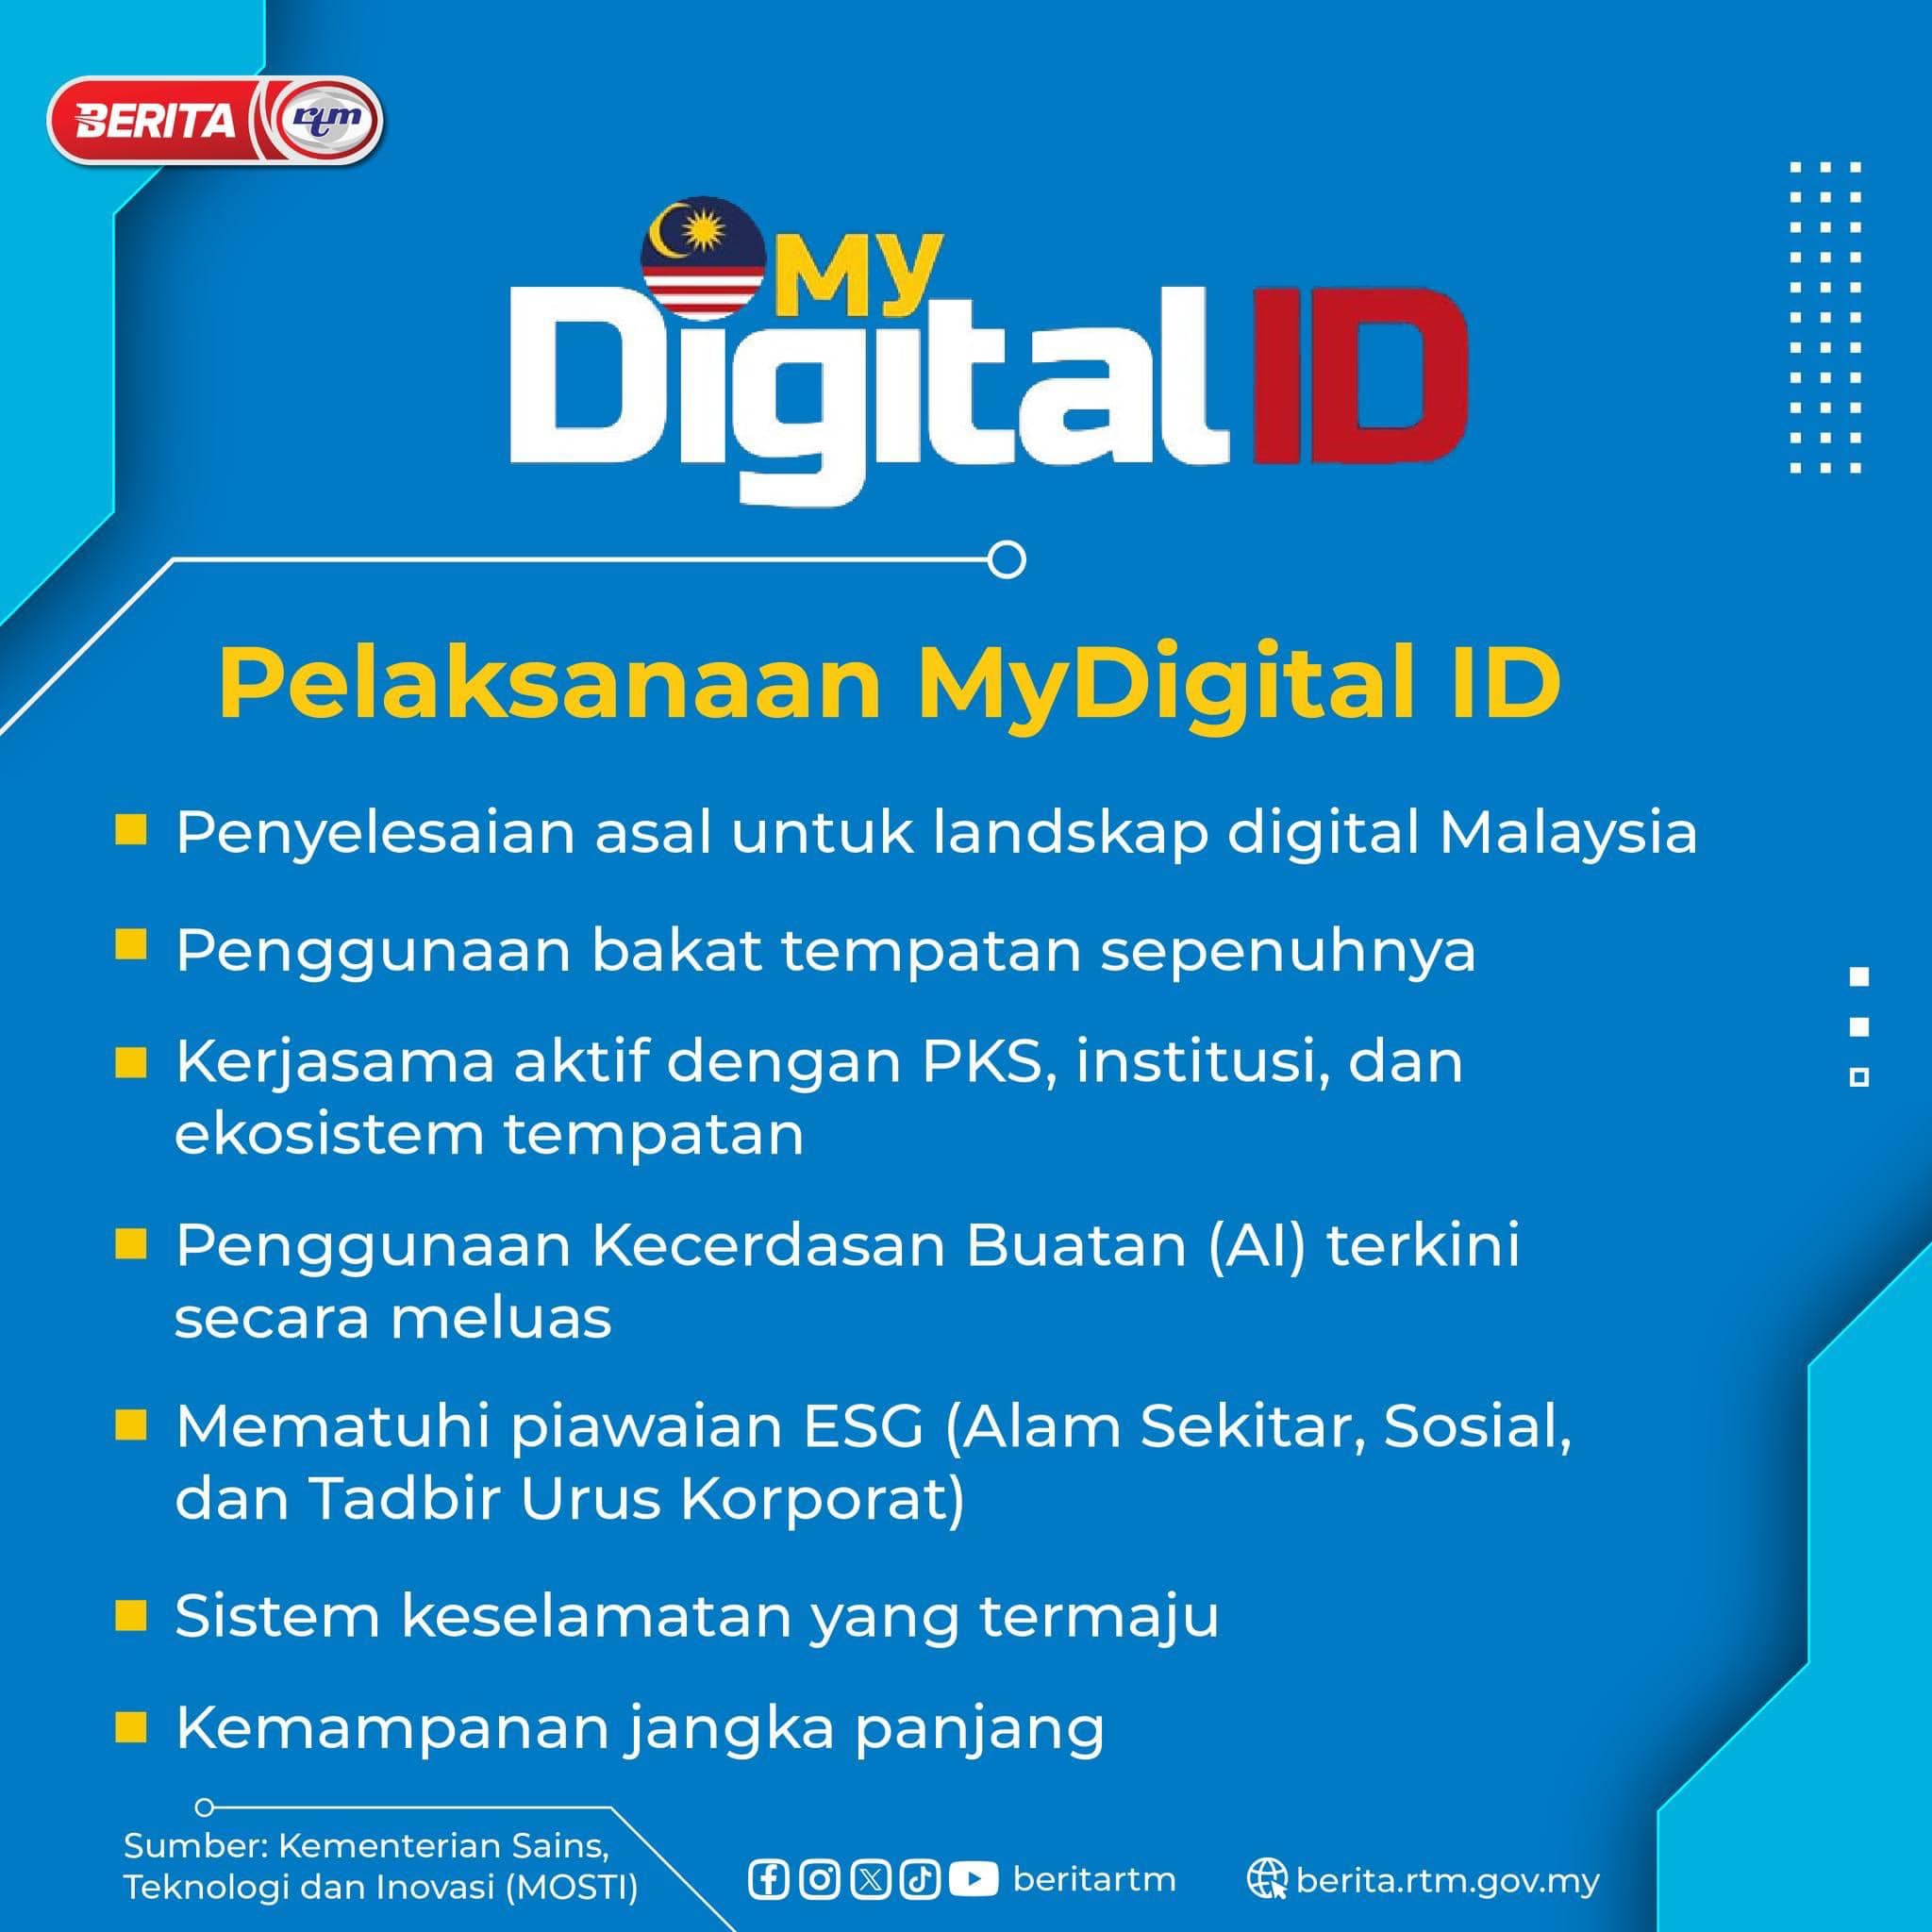 Pelaksanaan Mydigital ID